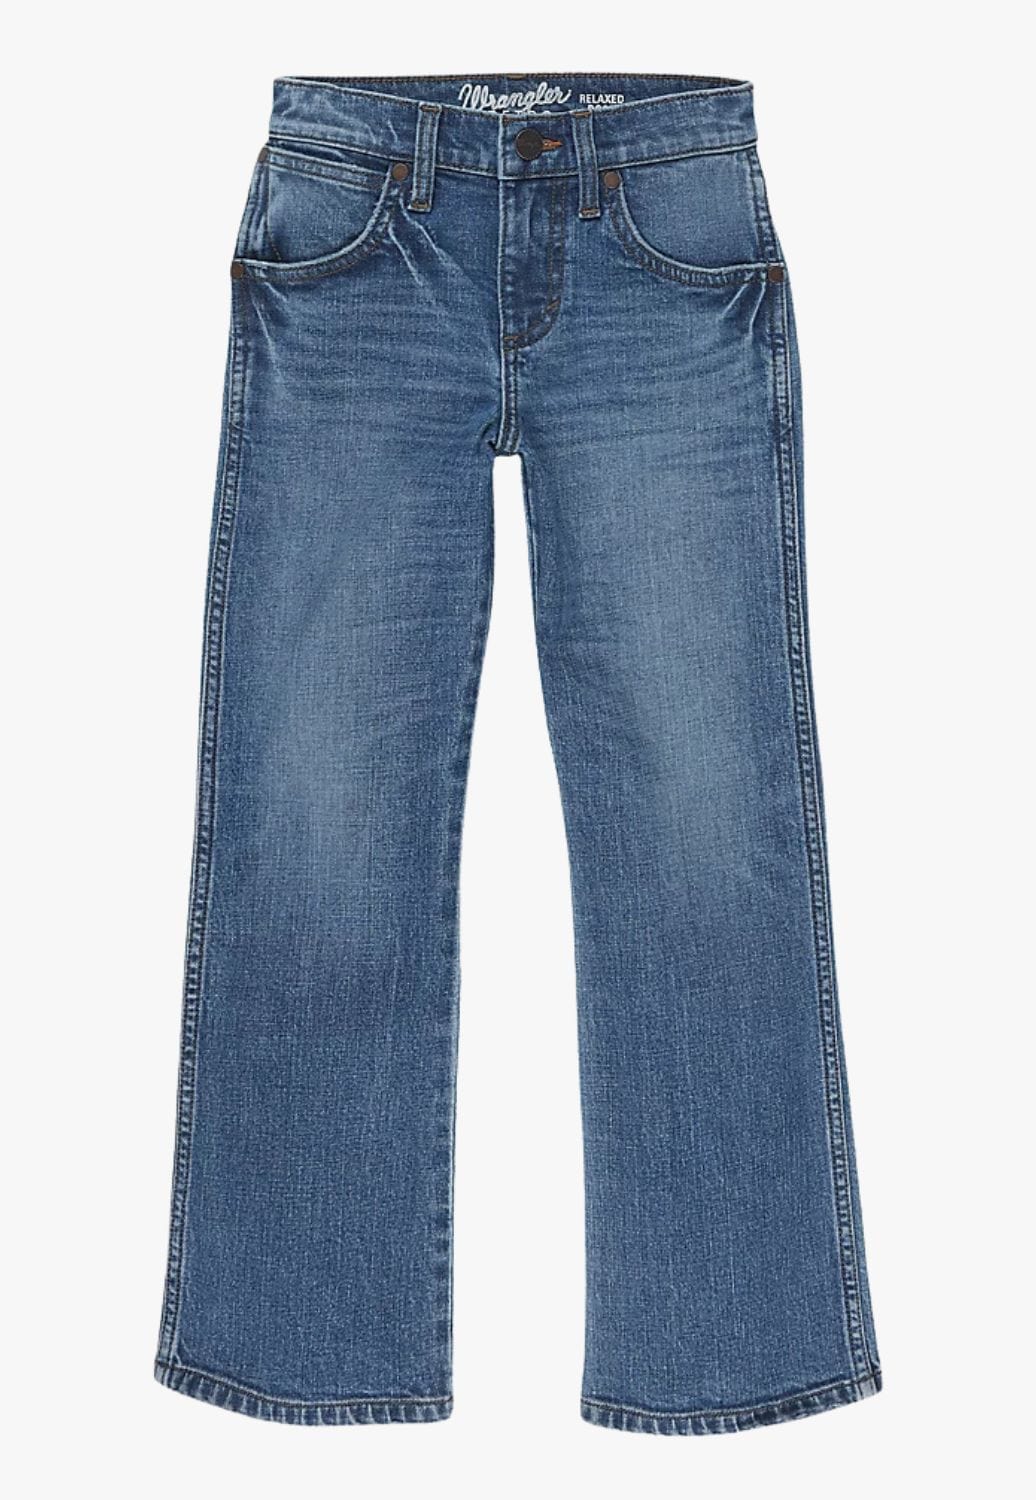 Wrangler CLOTHING-Boys Jeans Wrangler Boys Retro Relaxed Regular Fit Bootcut Jean